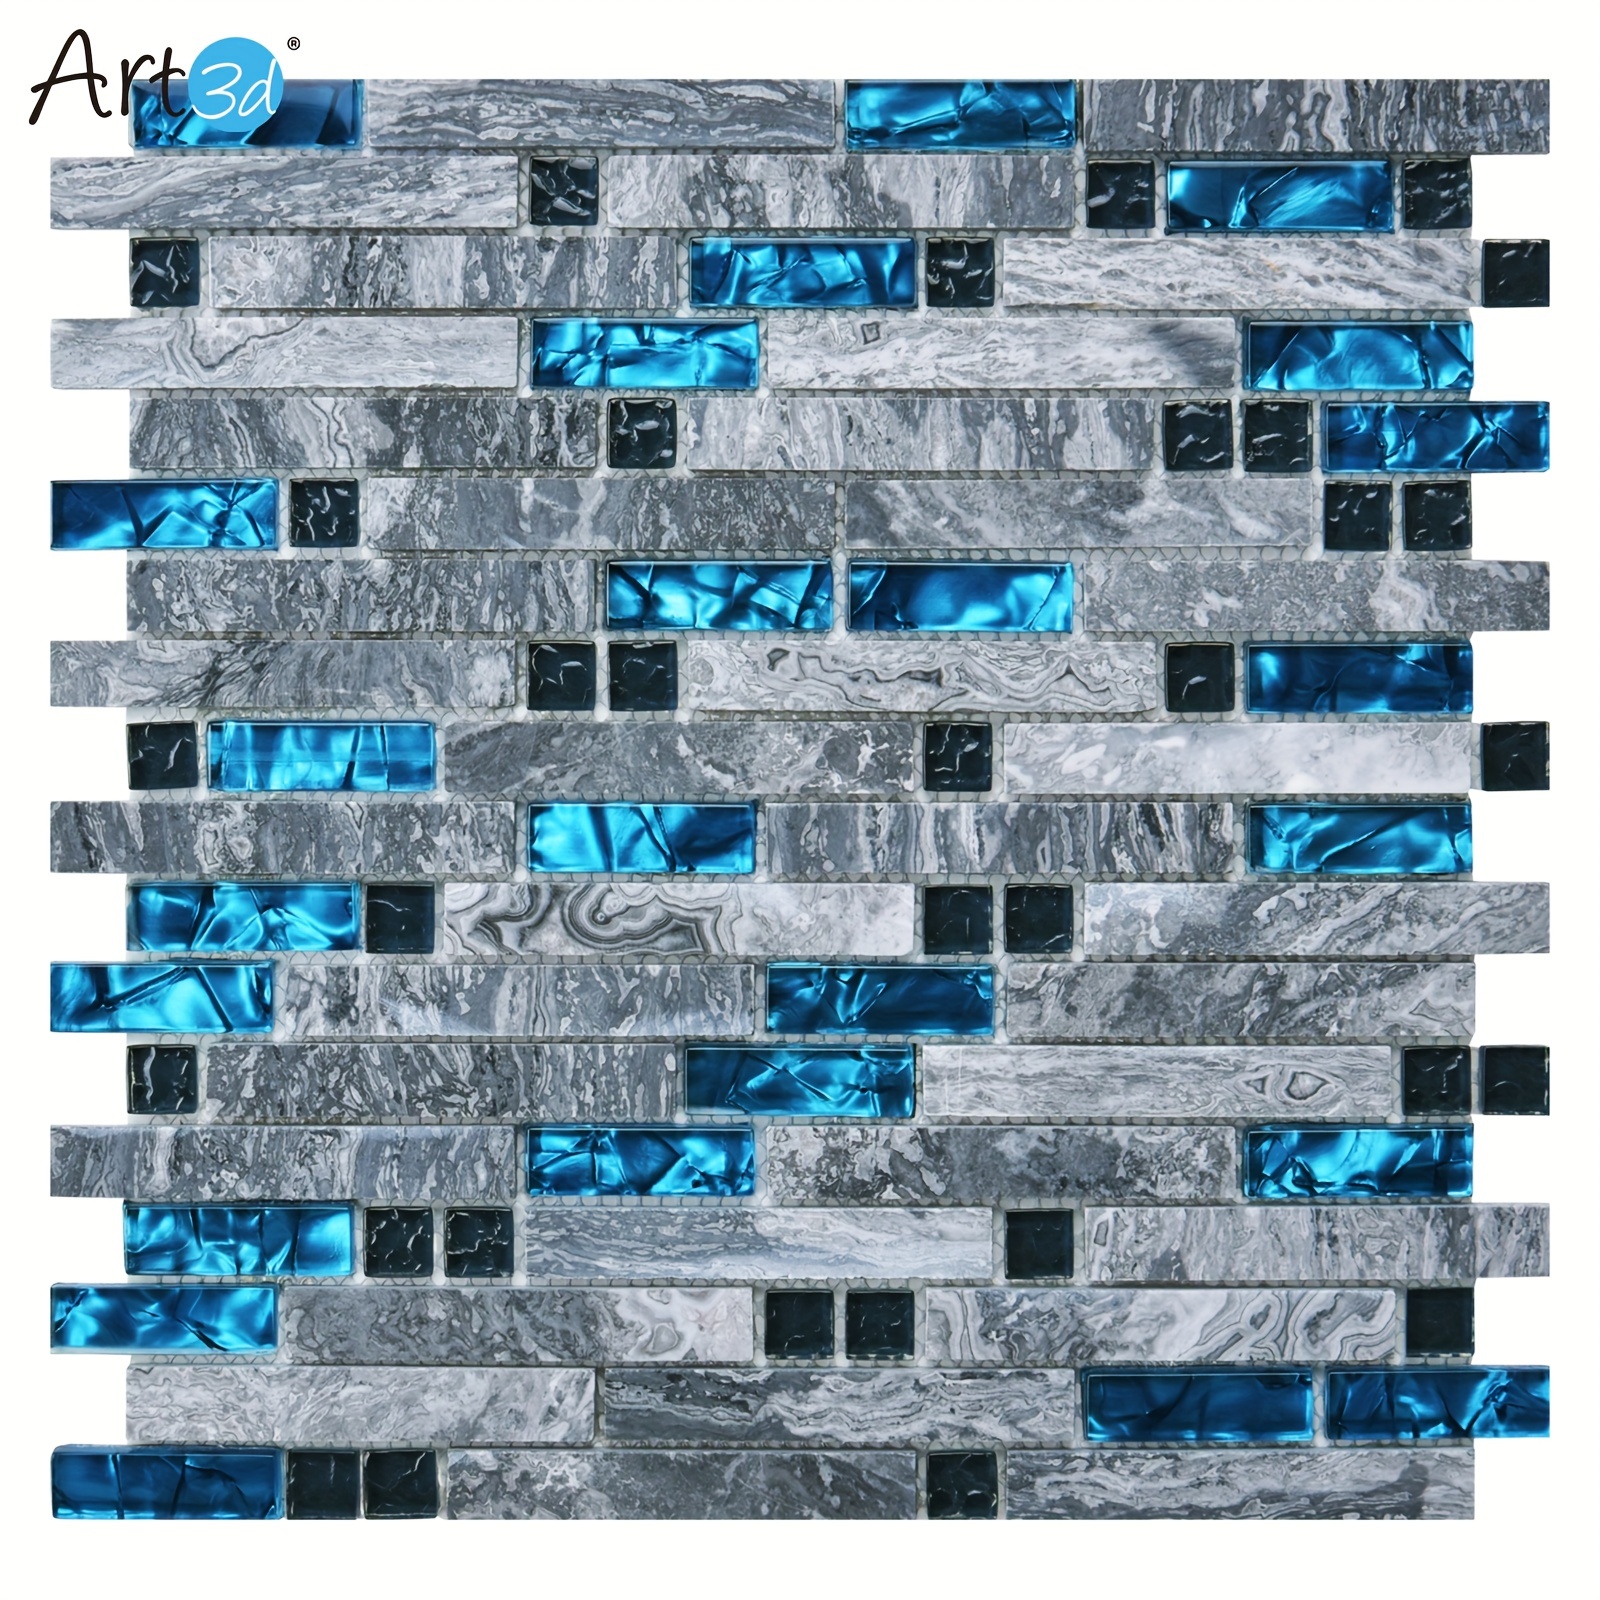 

Art3d 5-pack Mesh Back Decorative Tile, For Kitchen Backsplash Or Bathroom Backsplash (5 Sq.ft/box)